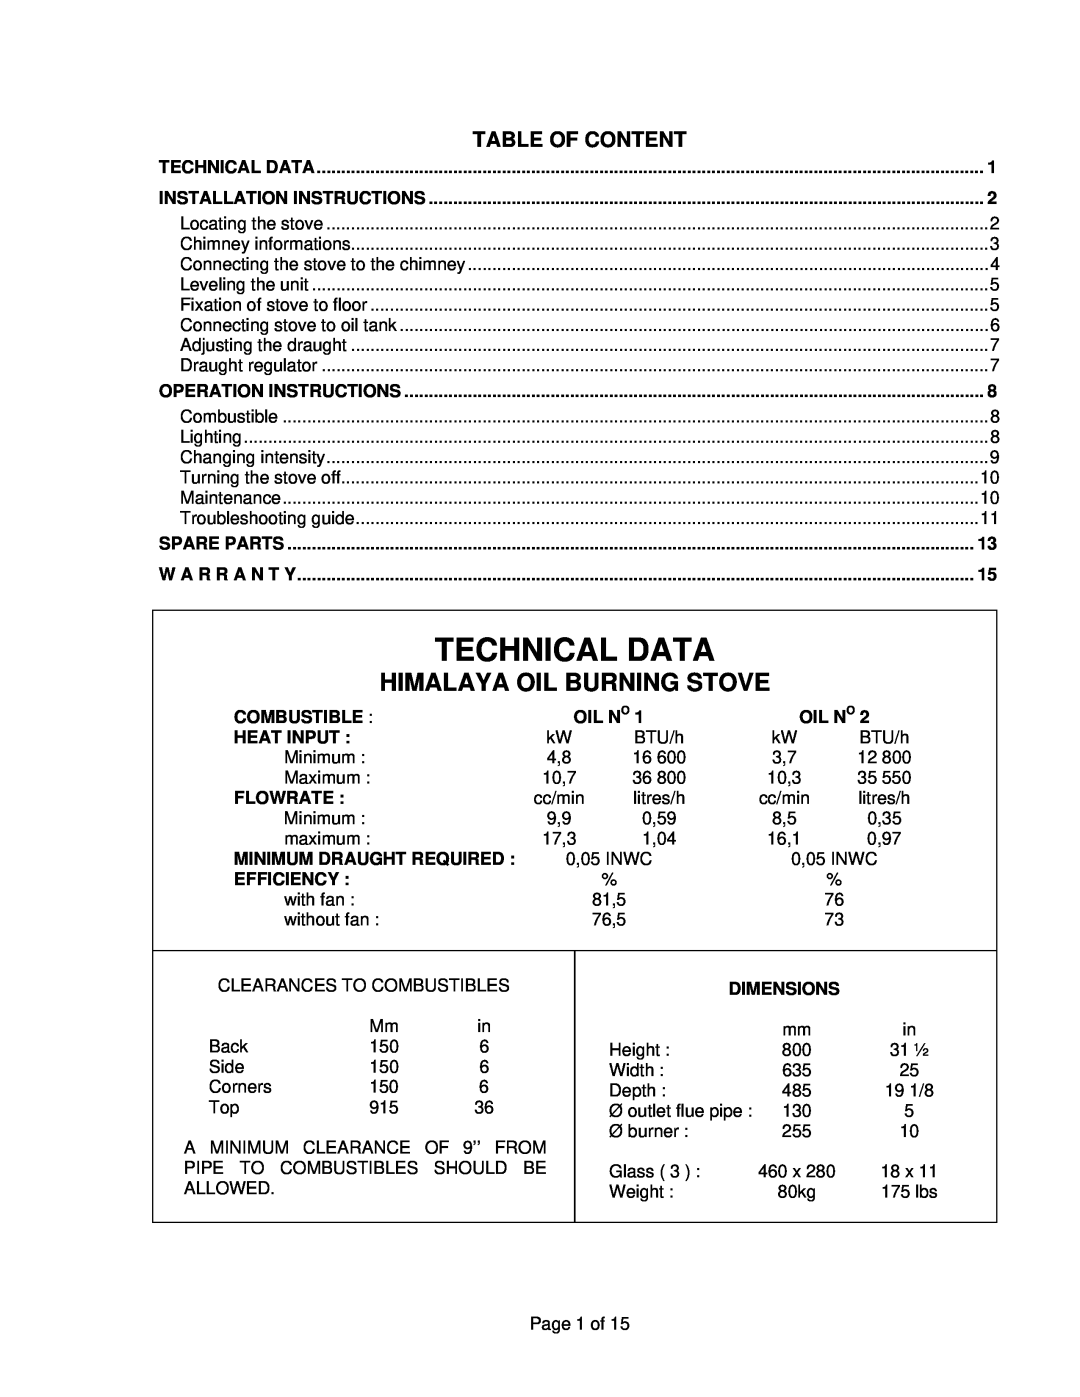 Drolet ALASKA 2000 manual Technical Data, Himalaya Oil Burning Stove, Table Of Content 